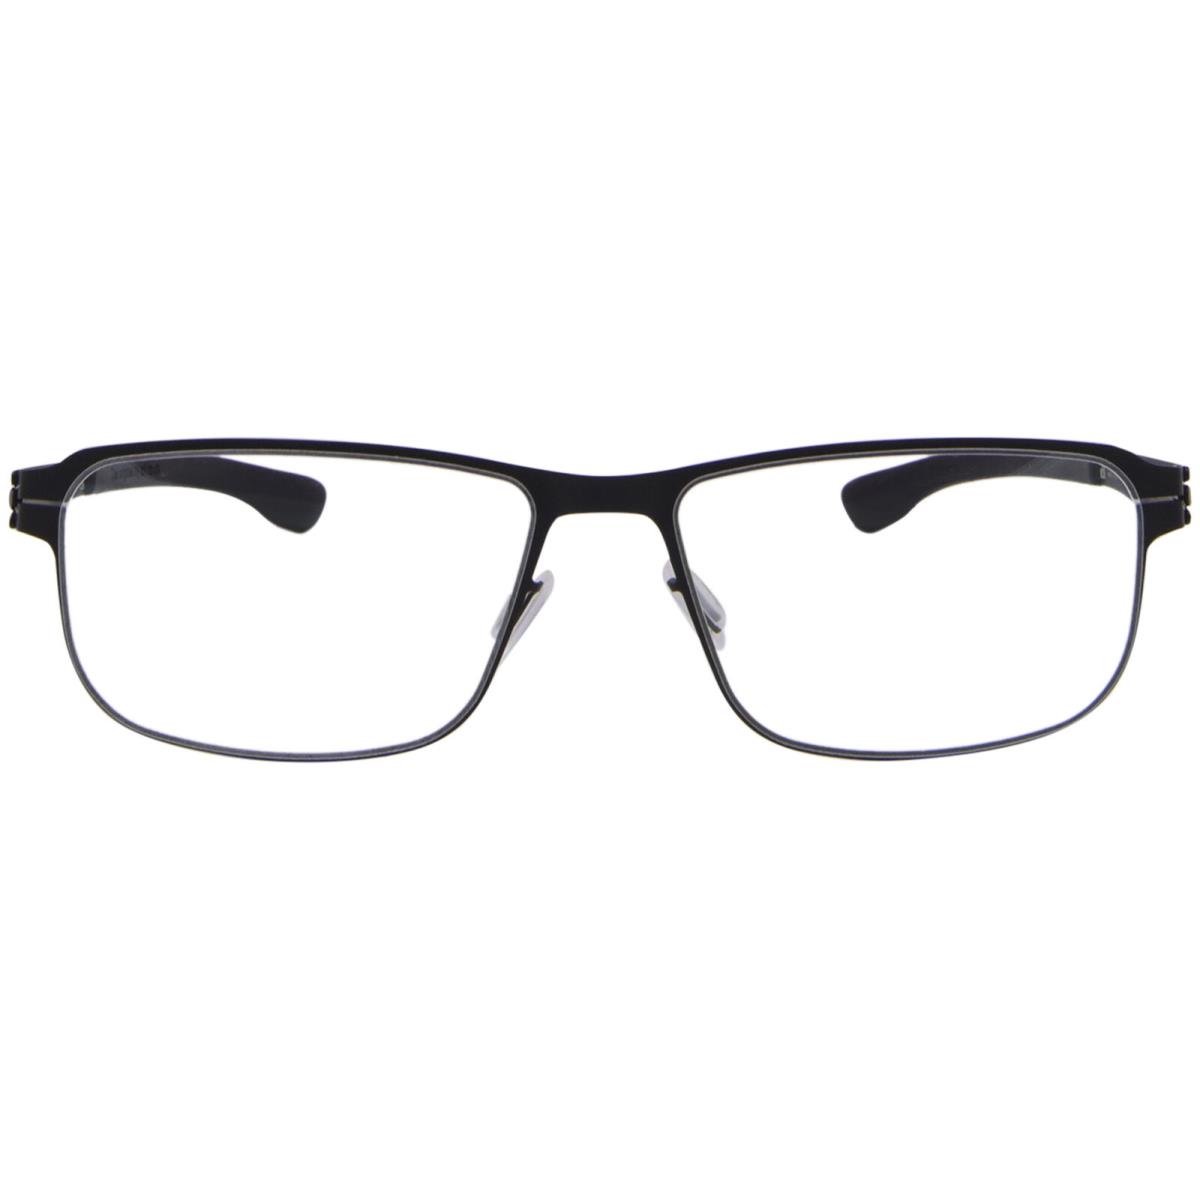 Ic Berlin Andrew-p Eyeglasses Men`s Black Full Rim Rectangle Shape 53mm